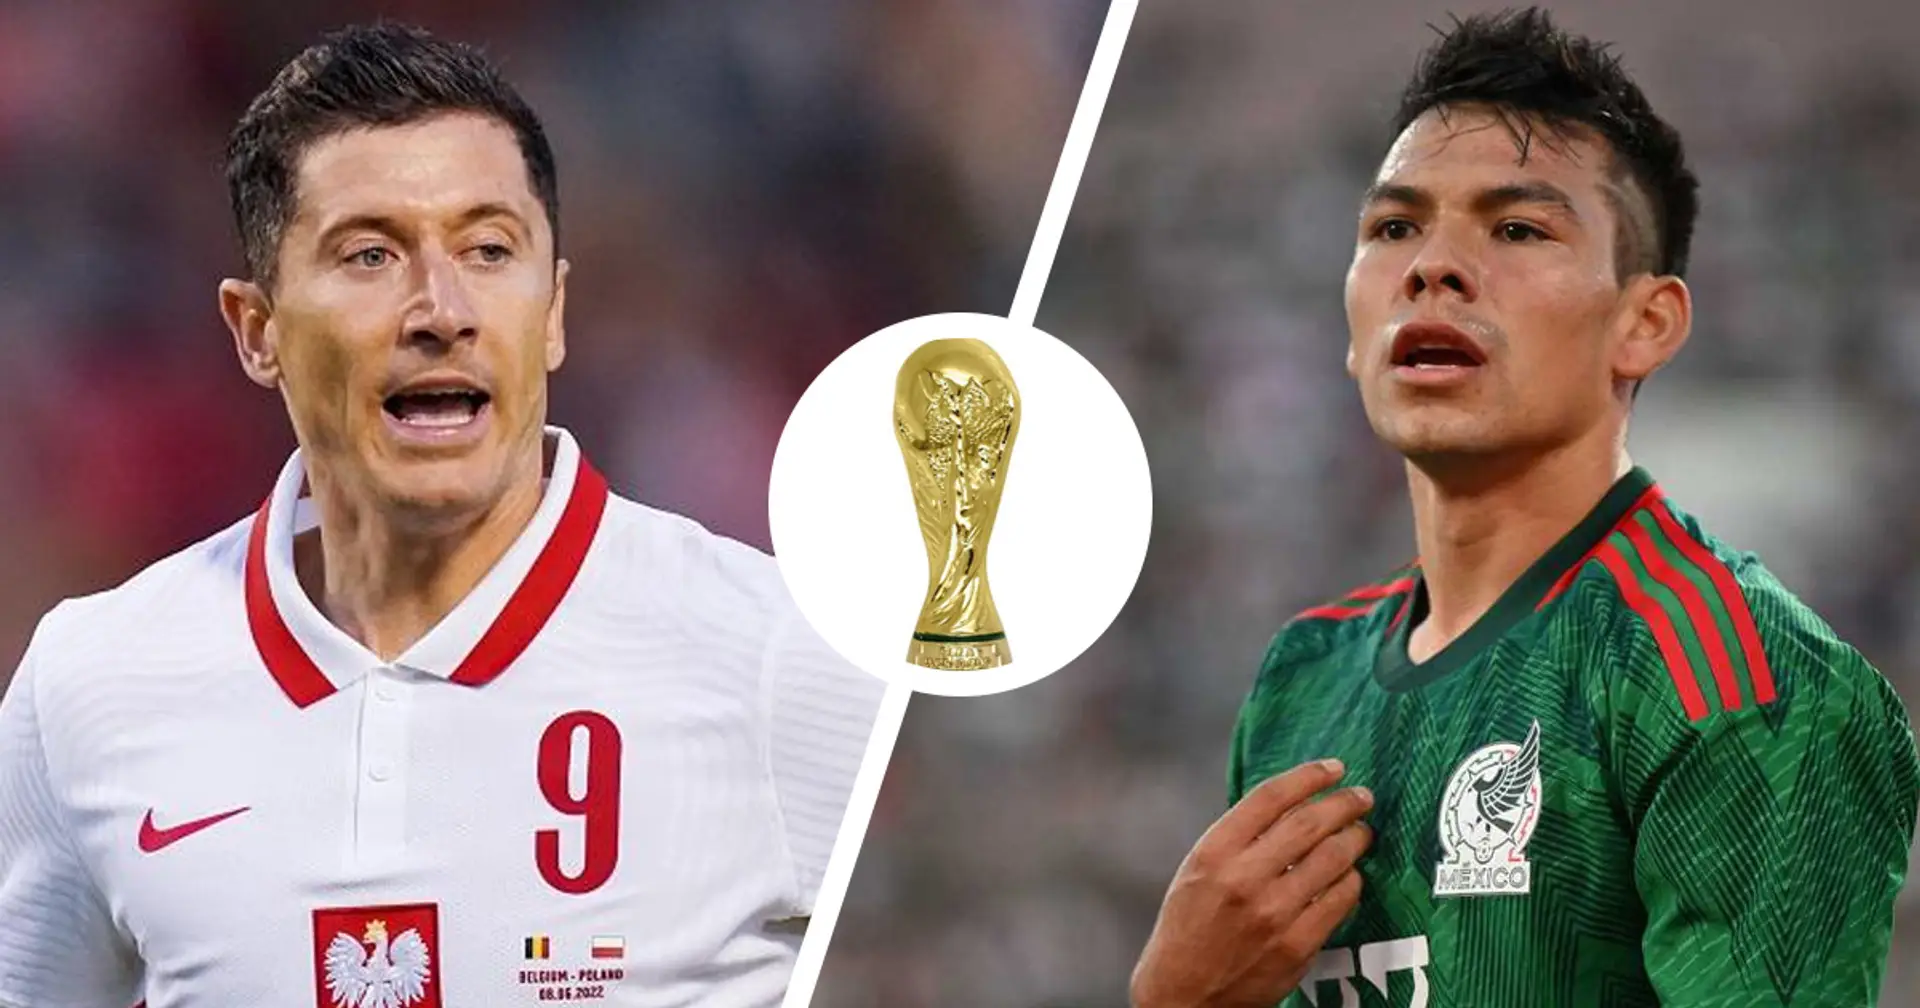 Messico vs Polonia: le formazioni ufficiali delle squadre per la partita della Coppa del Mondo Qatar 2022 